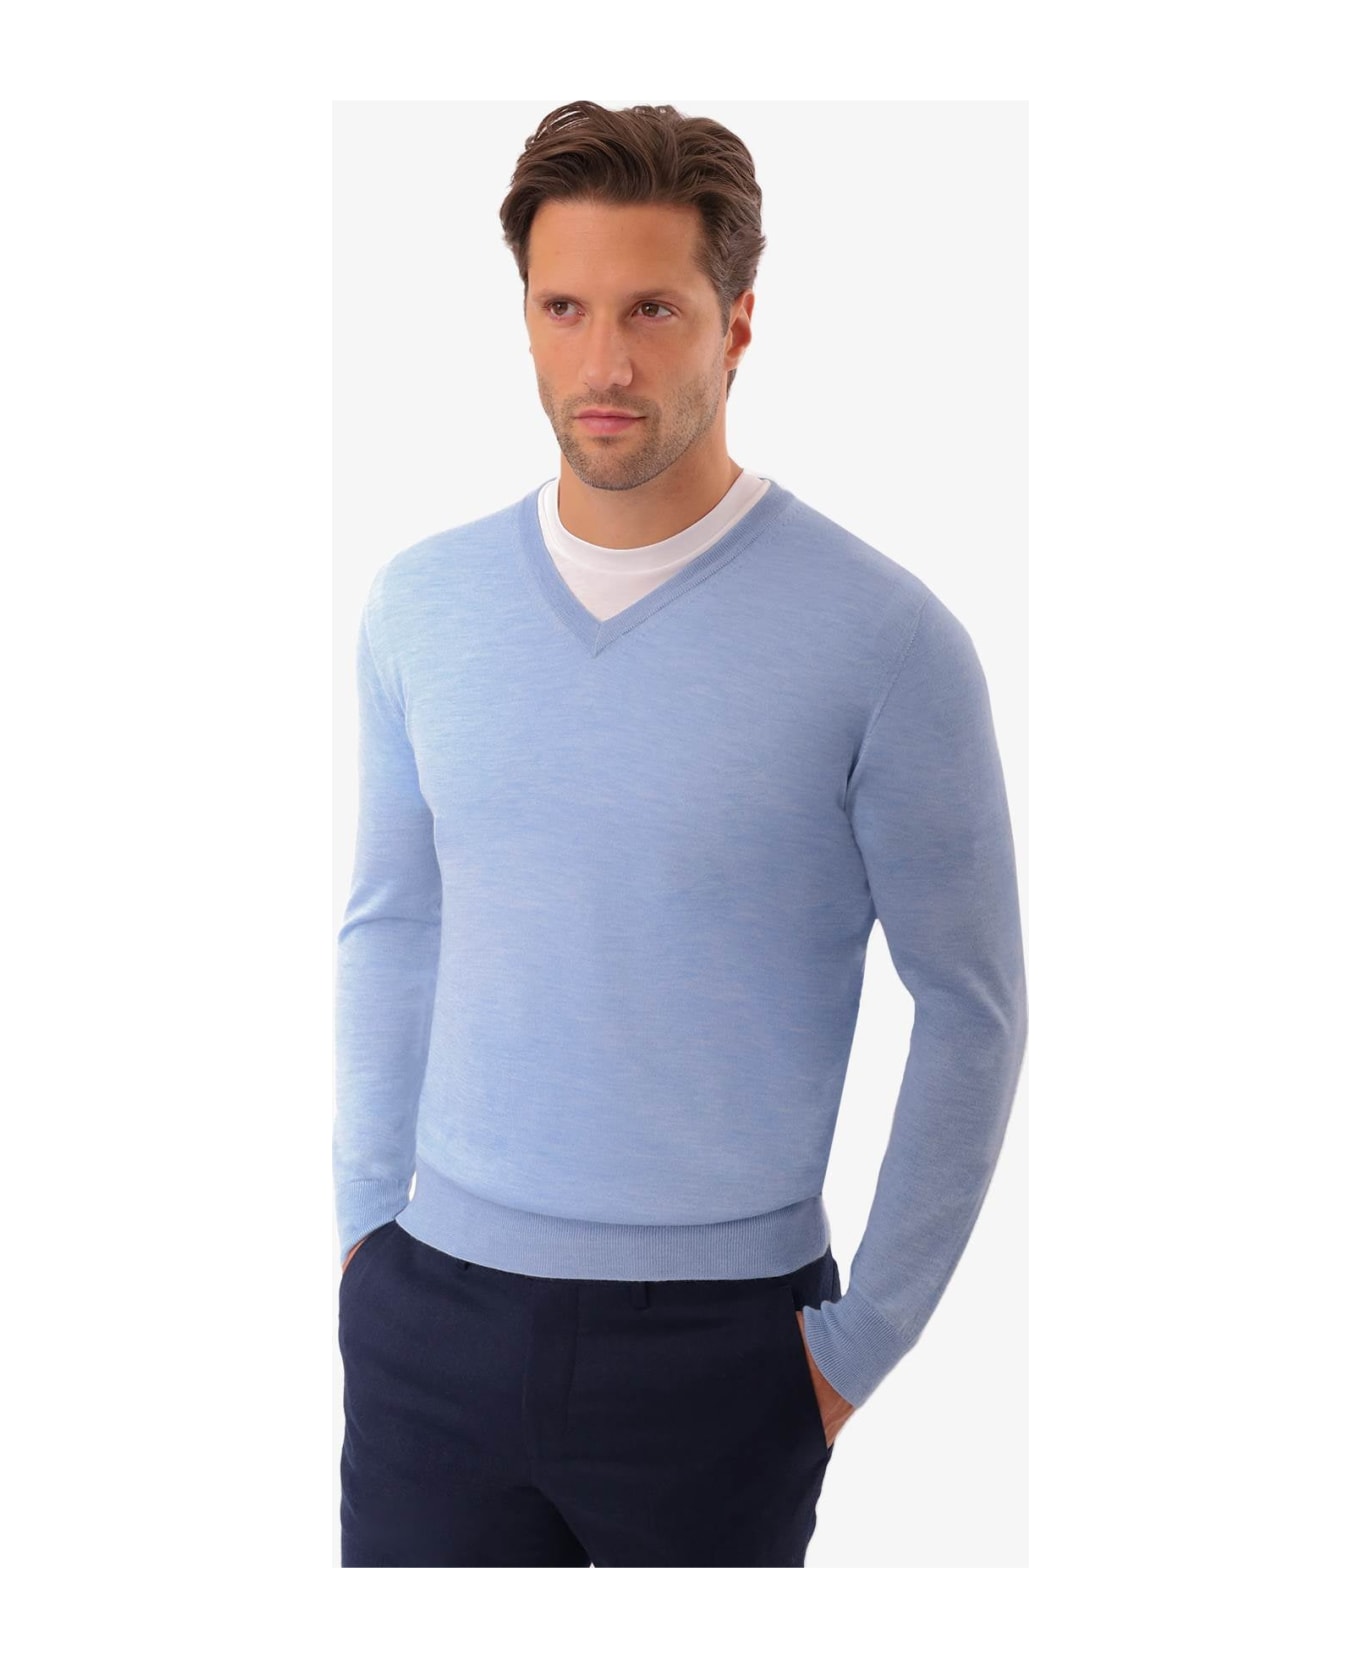 Larusmiani V-neck Sweater 'pullman' Sweater - LightBlue フリース